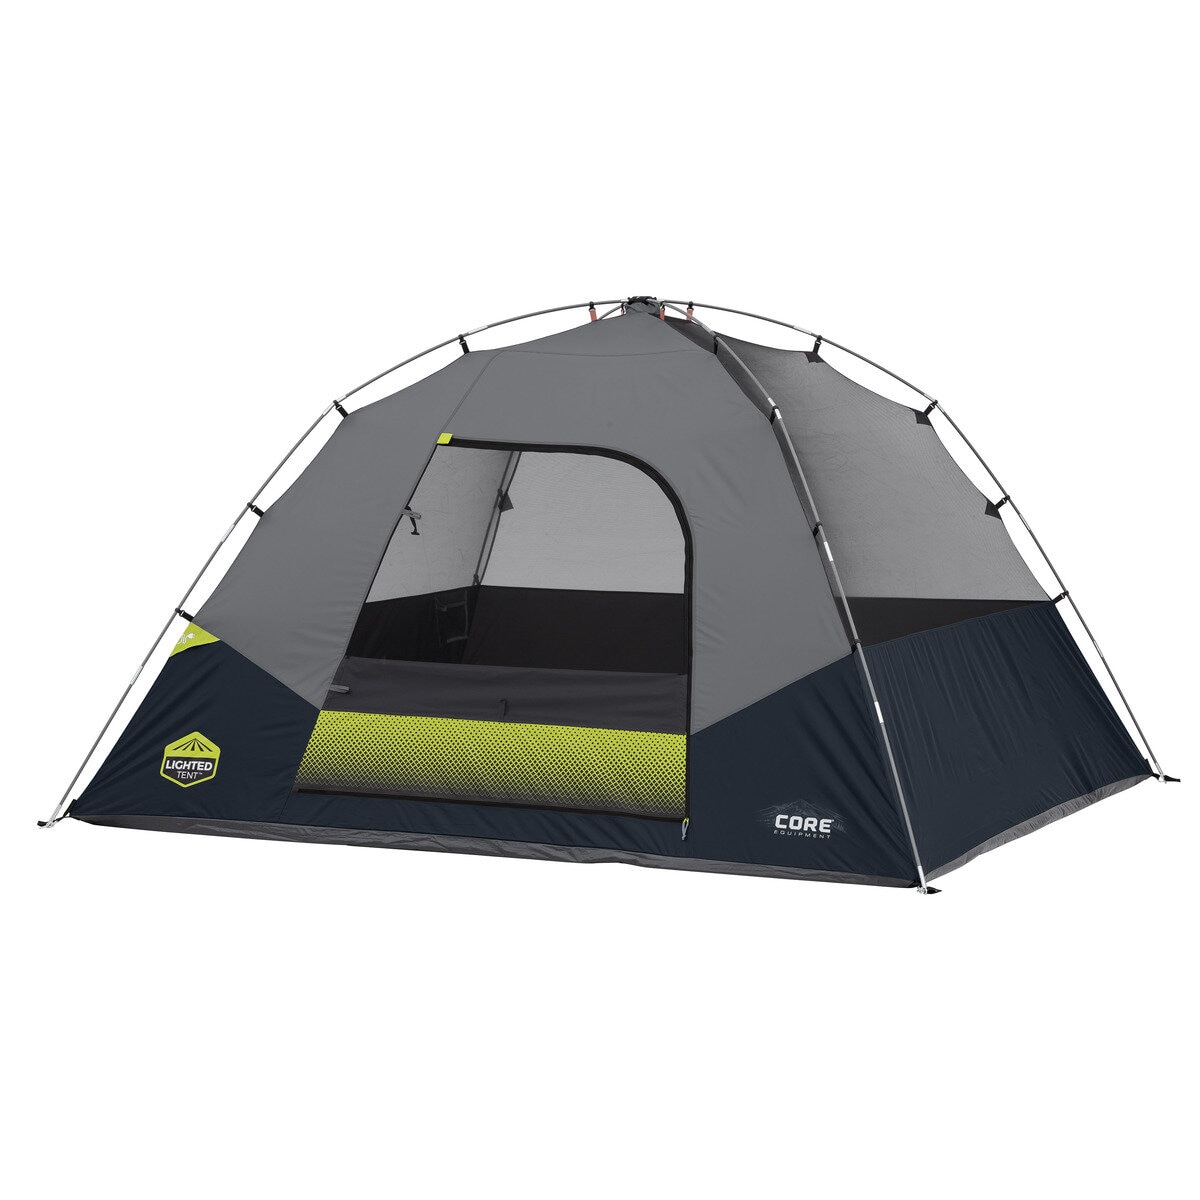 CORE 6人用遮光テント アウトドア キャンプ